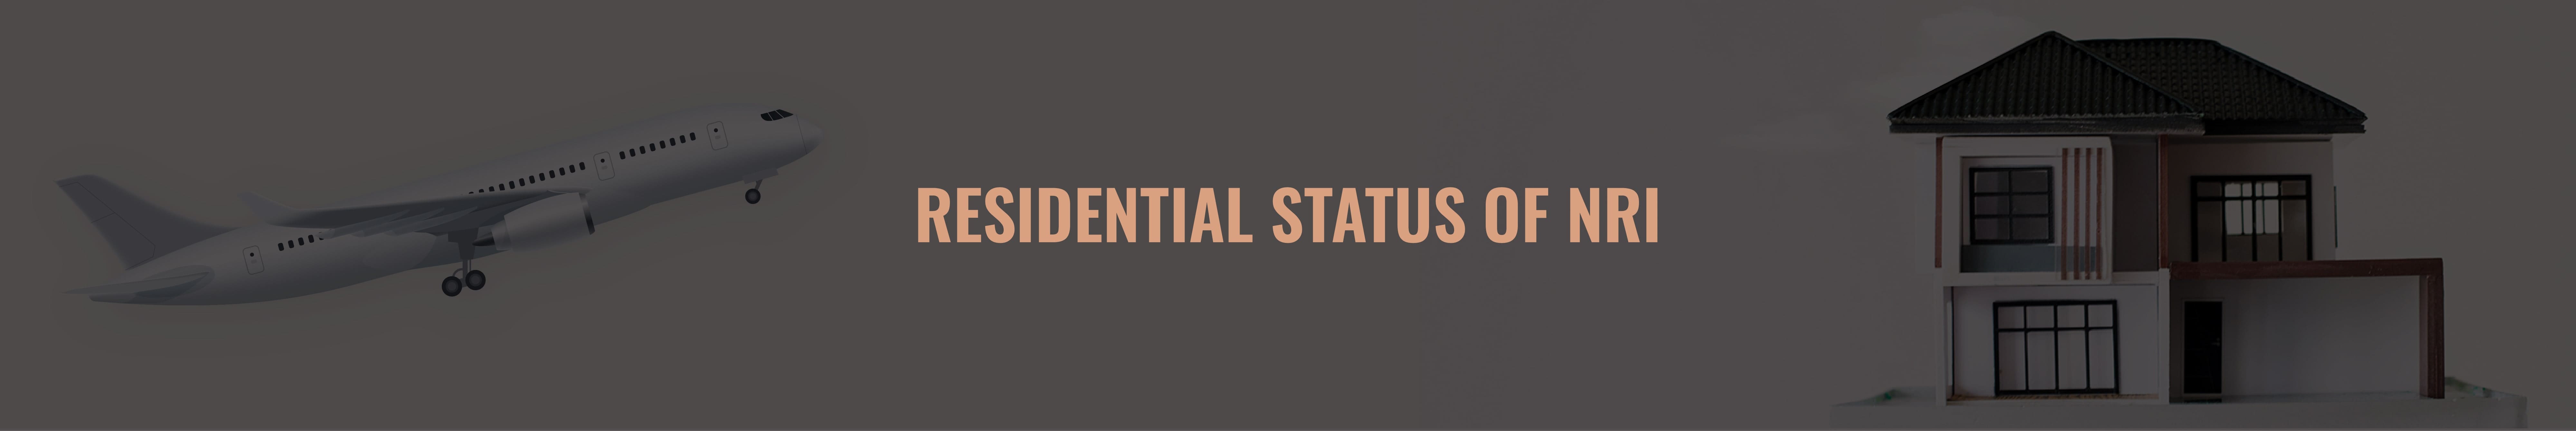 Residential Status for NRIs